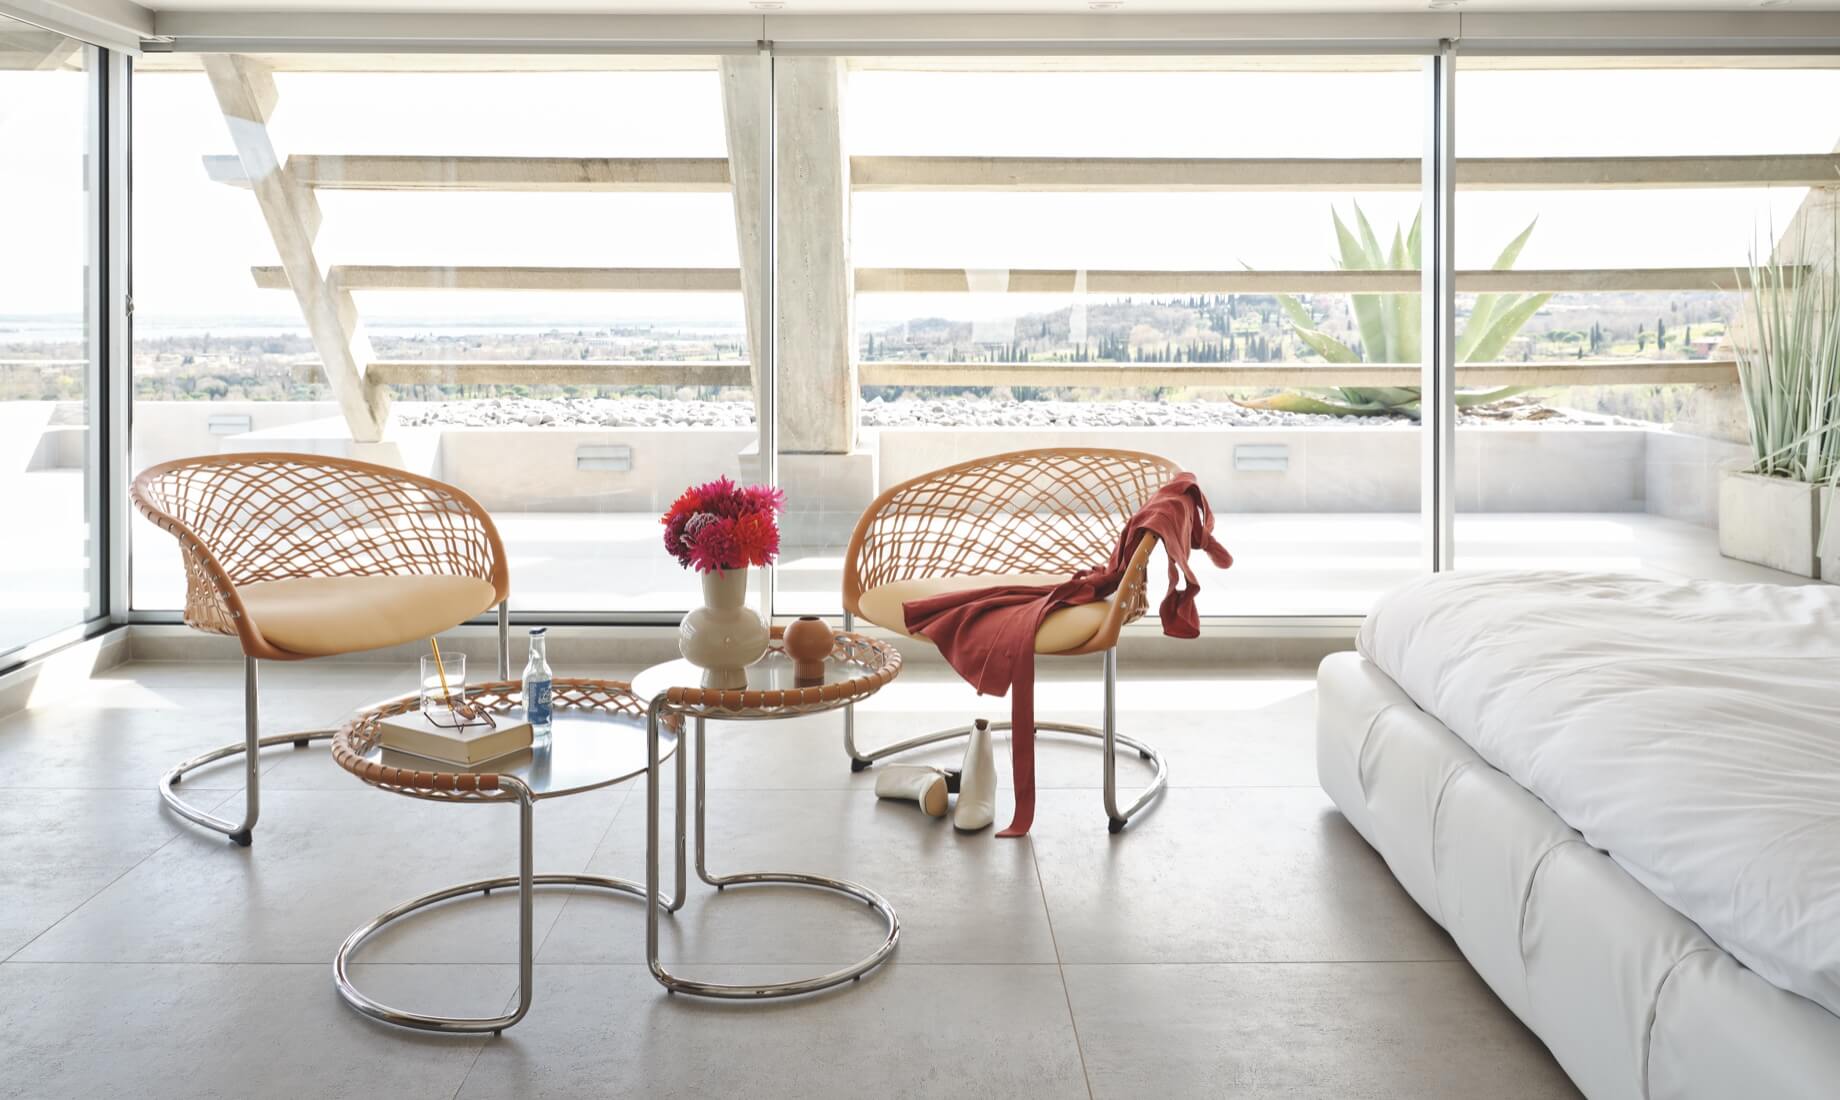 Sedia lounge e coffee table P47, design Franco Poli.